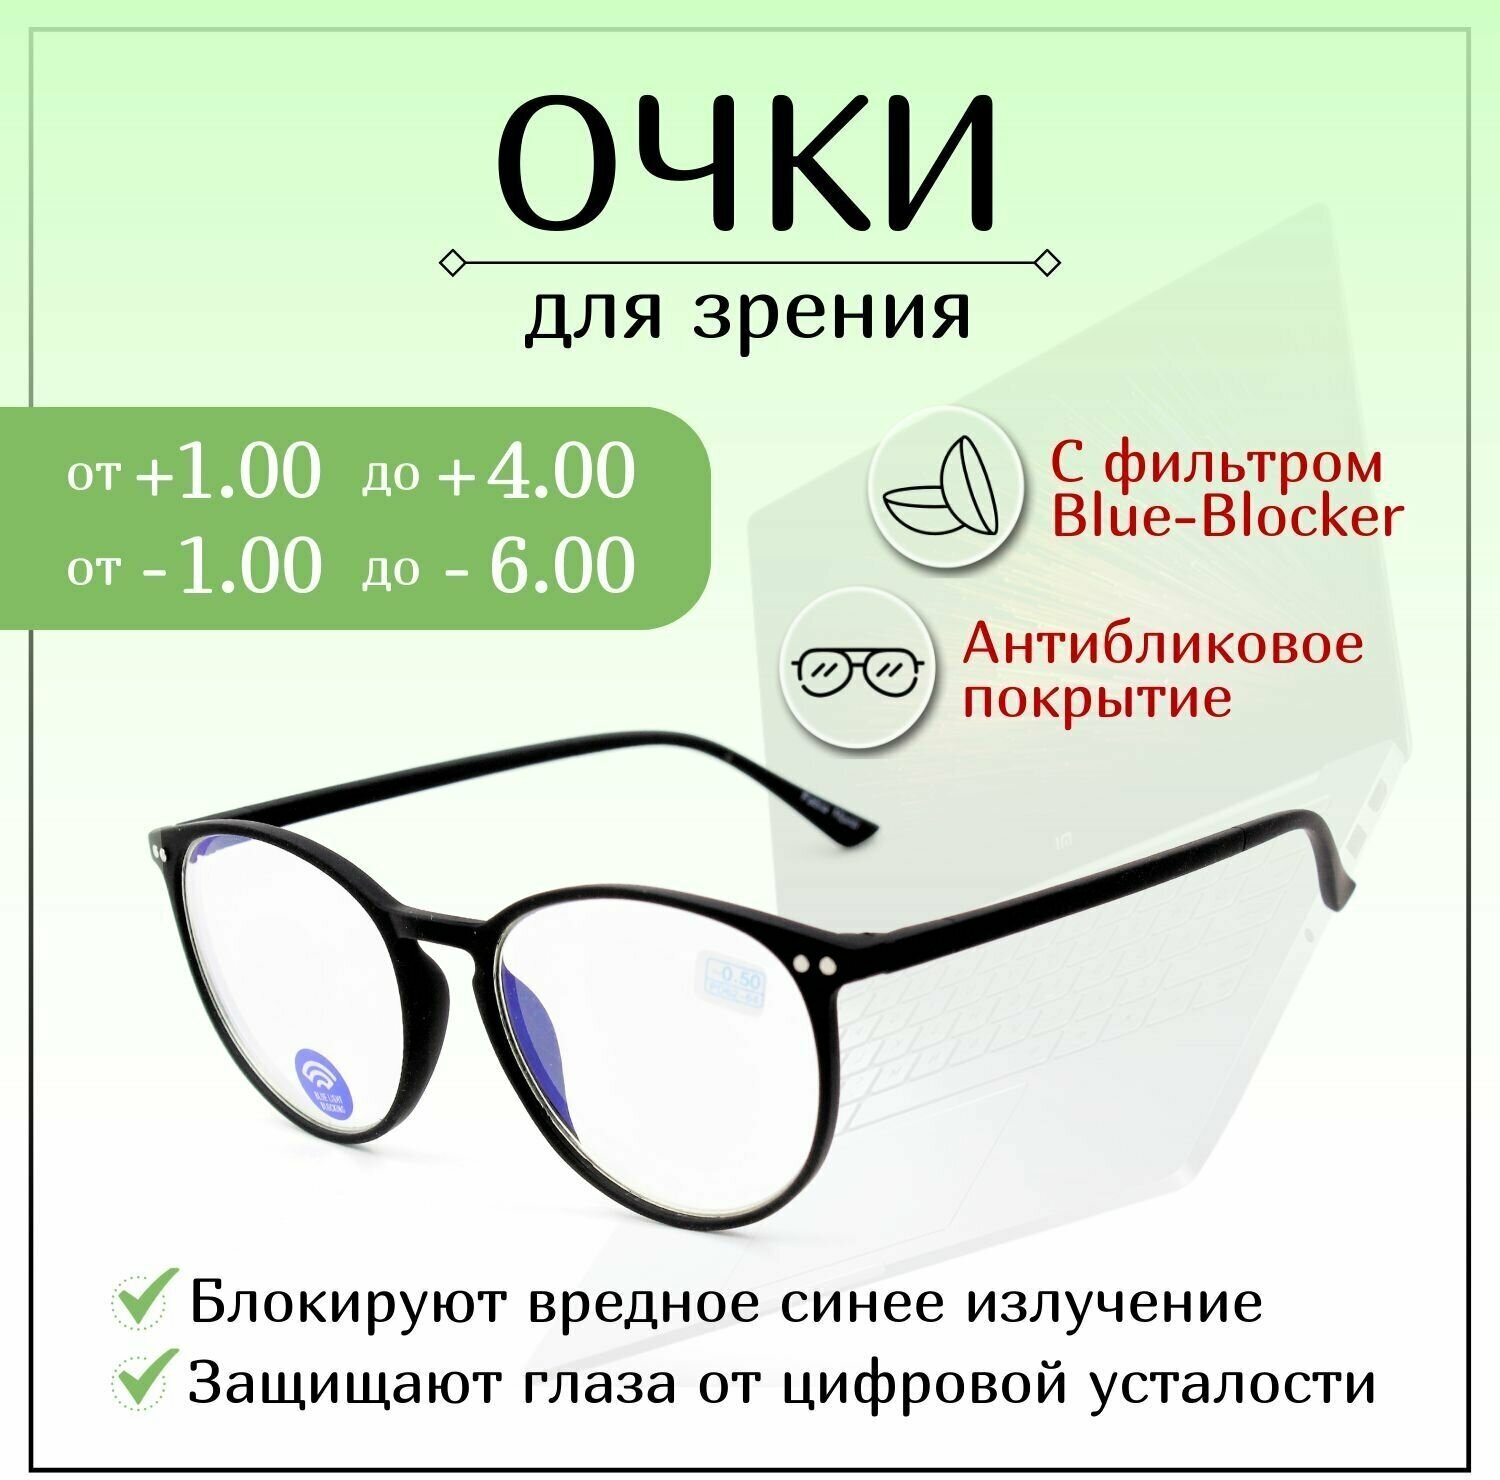 Готовые очки для зрения с диоптриями -6,00, FABIA MONTI готовые, женские, мужские, корригирующие